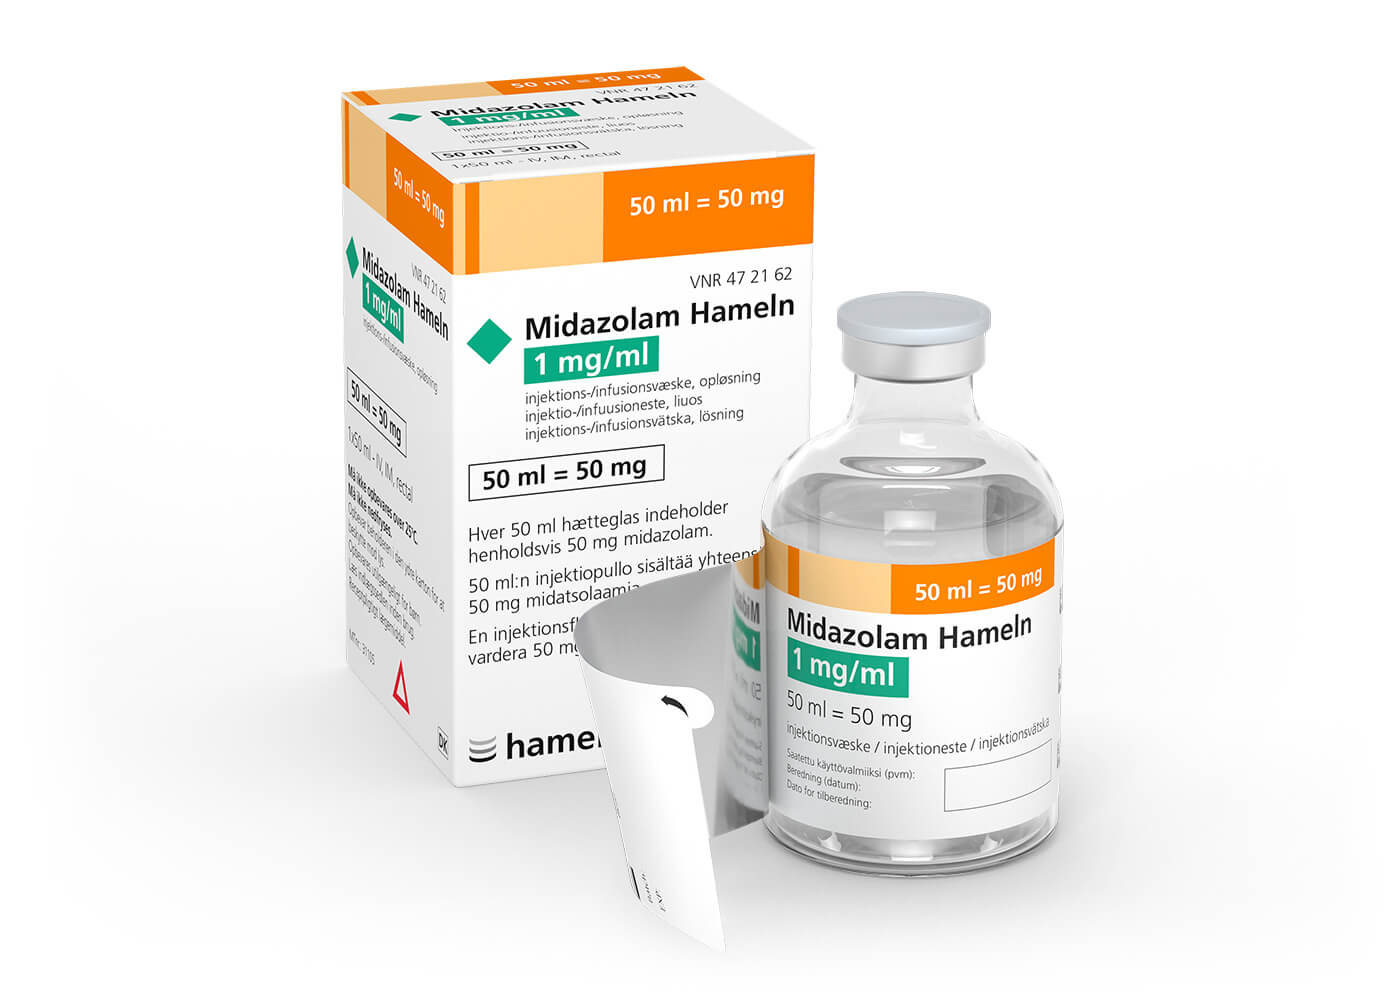 Midazolam_DK-FI_1_mg-ml_in_50_ml_Pack-Vial_1St_Mefar_2021-05